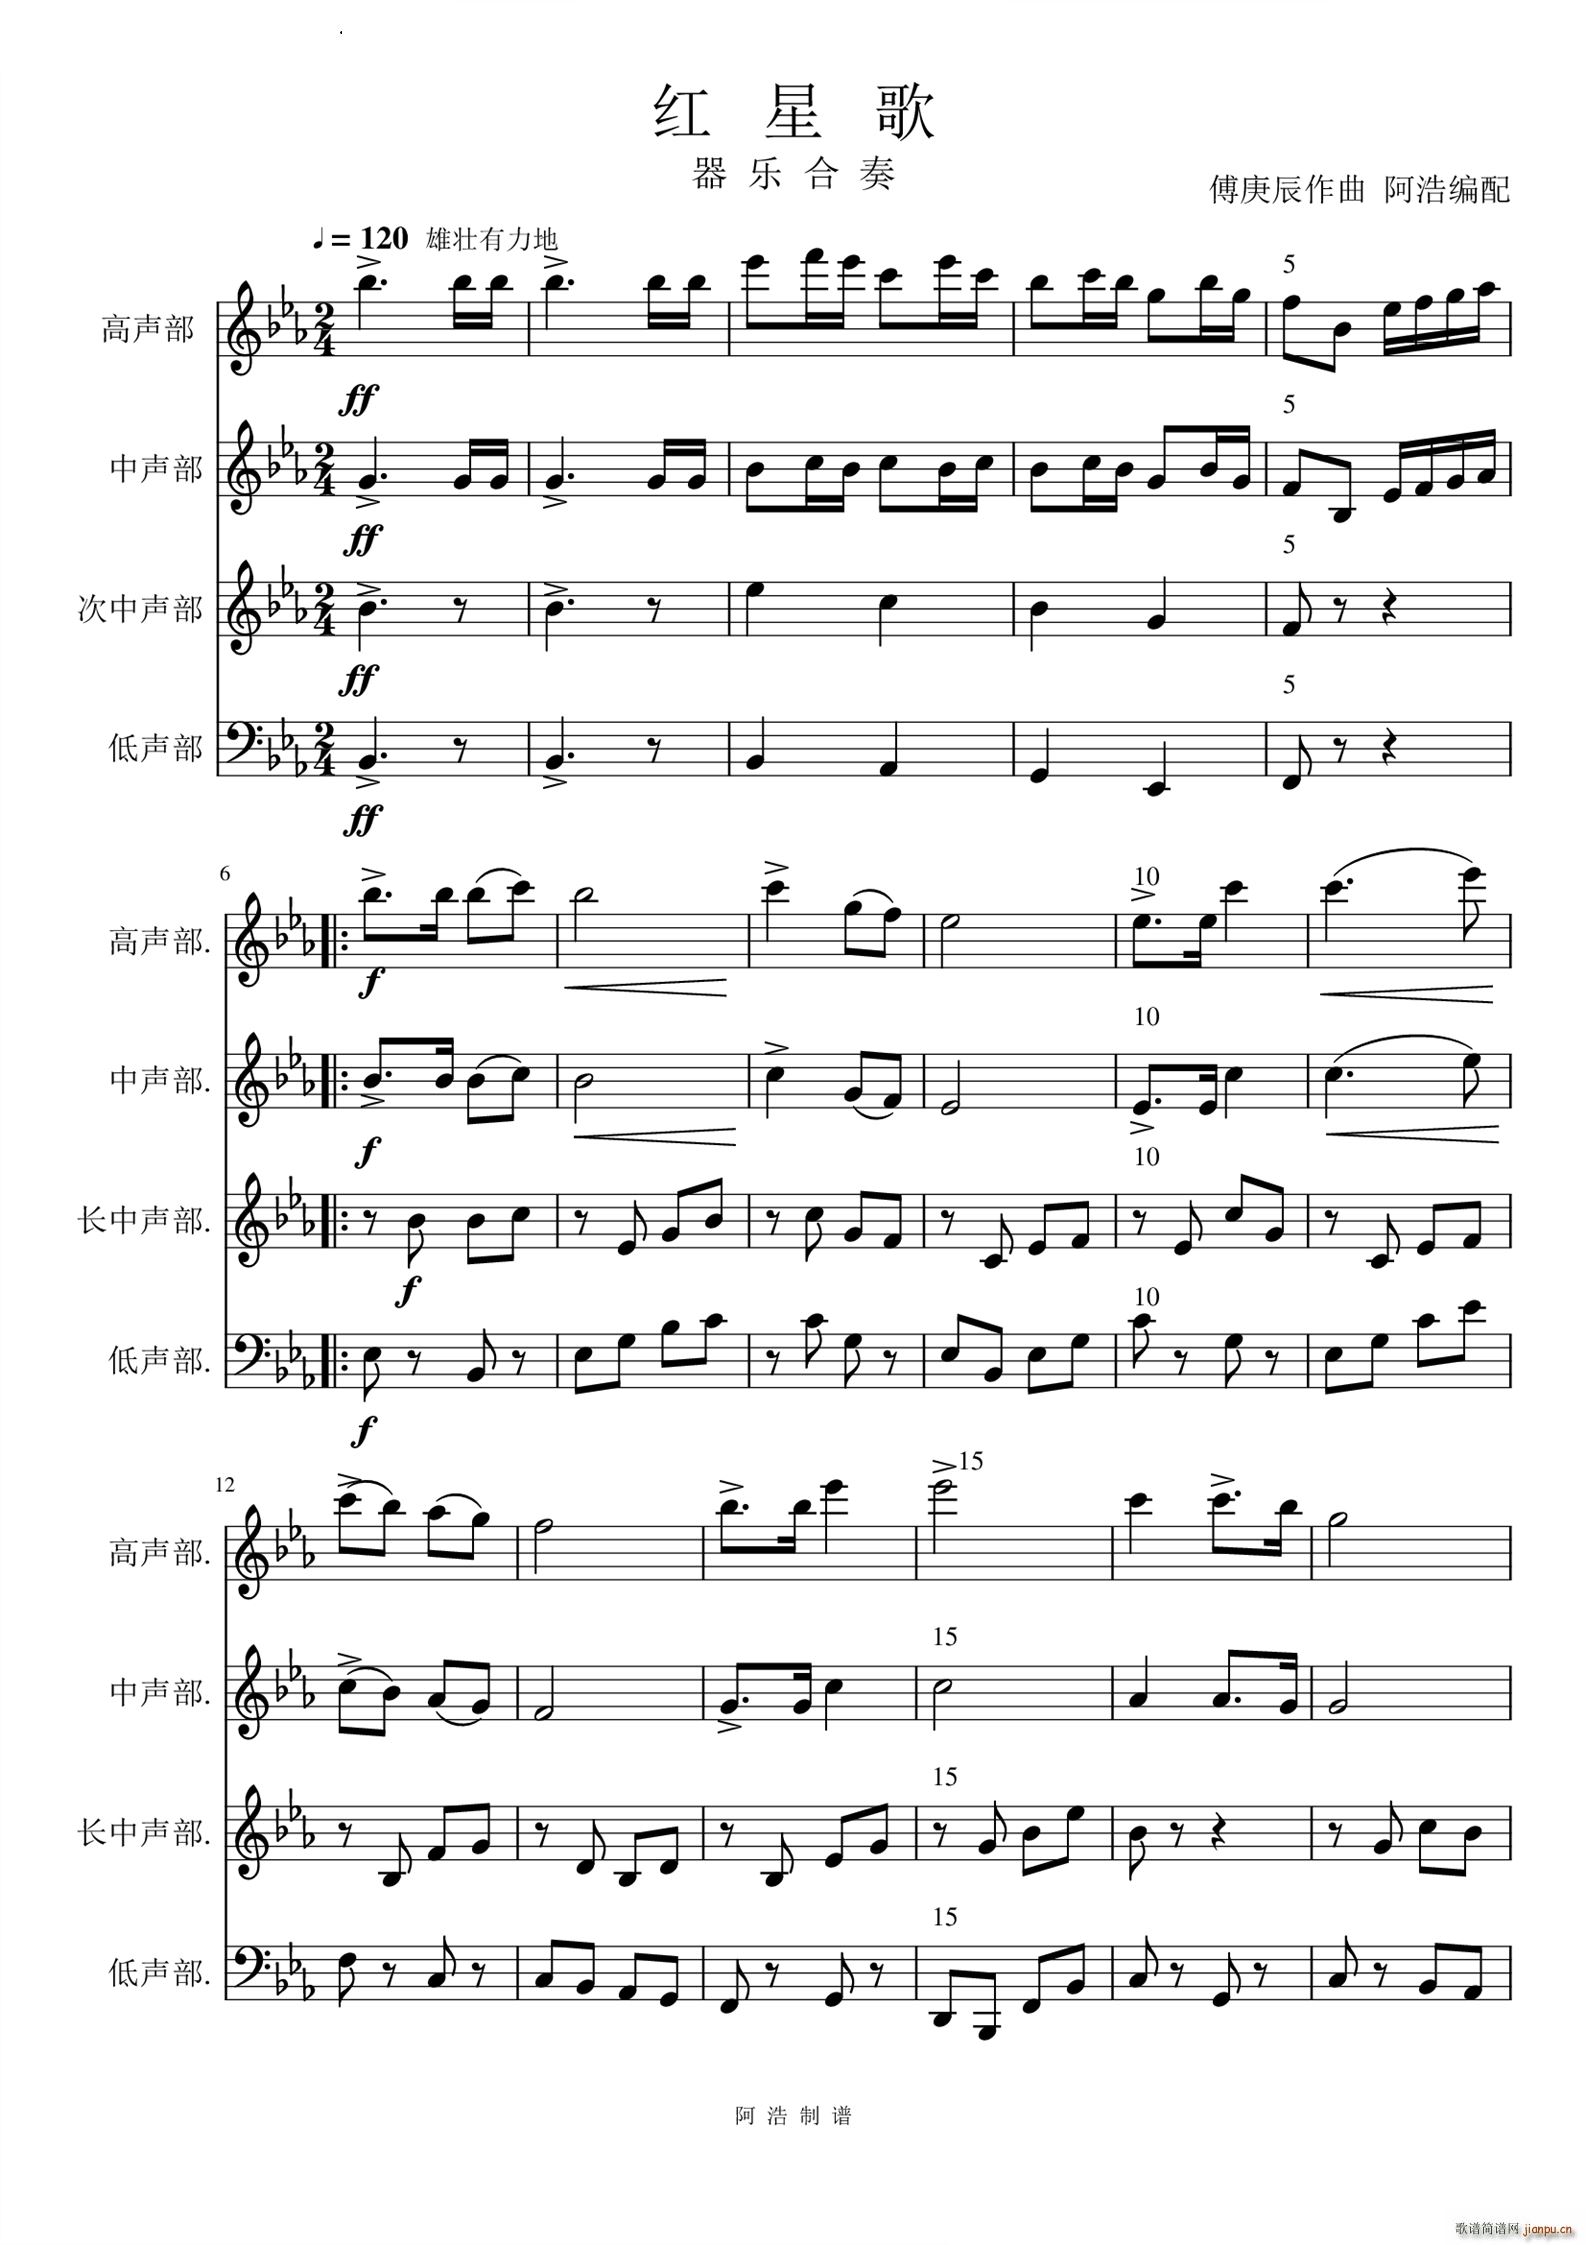 红星歌器乐合奏(总谱)1